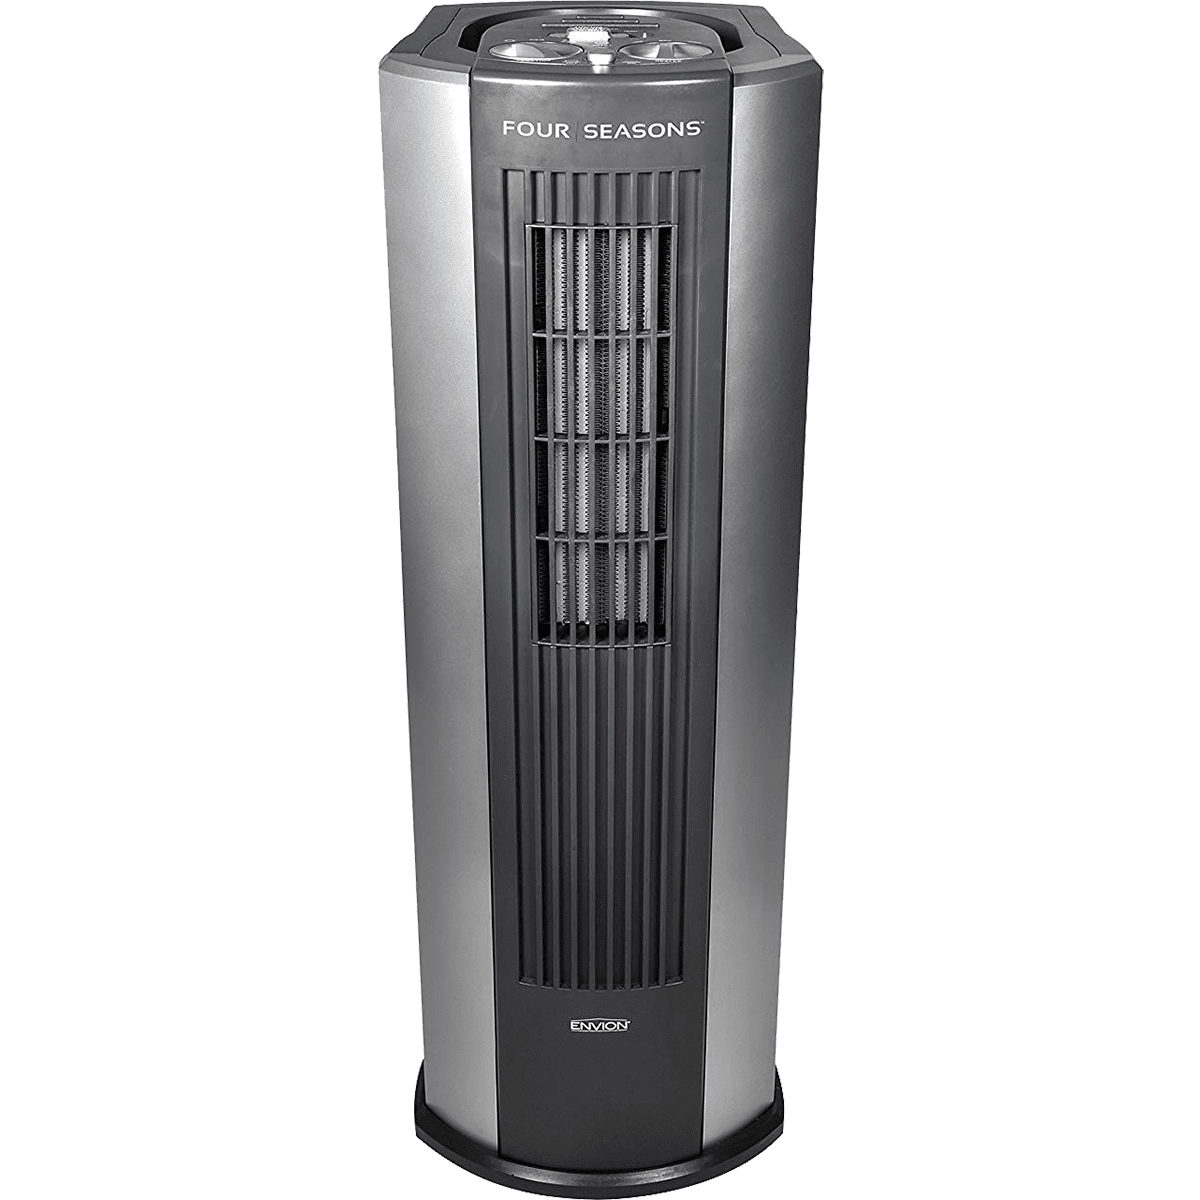 Envion Four Seasons 4-in-1 Air Purifier, Heater, Fan, & Humidifier